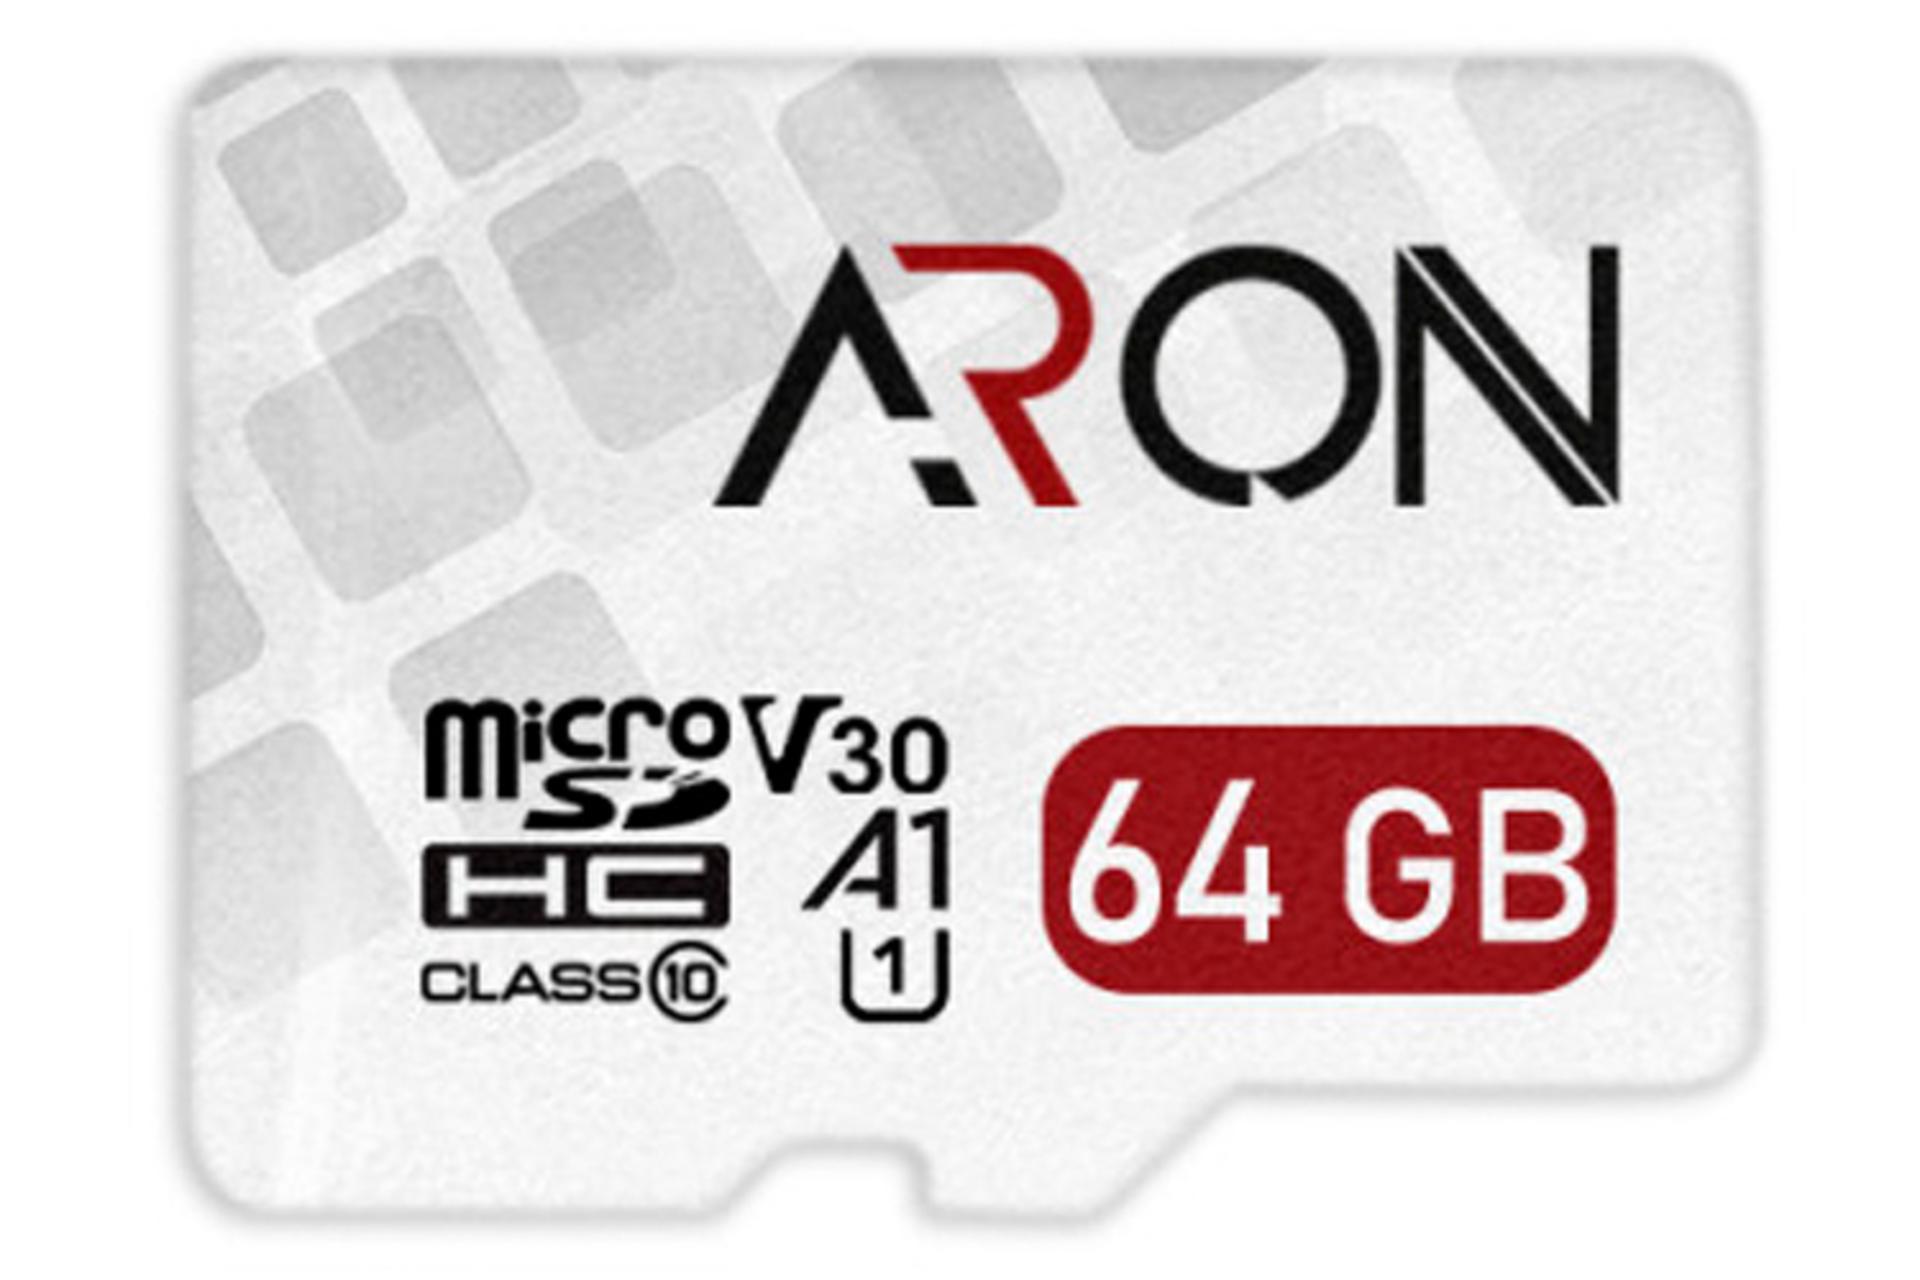 آرون microSDXC با ظرفیت 64 گیگابایت مدل Pro V30 A1 کلاس 10